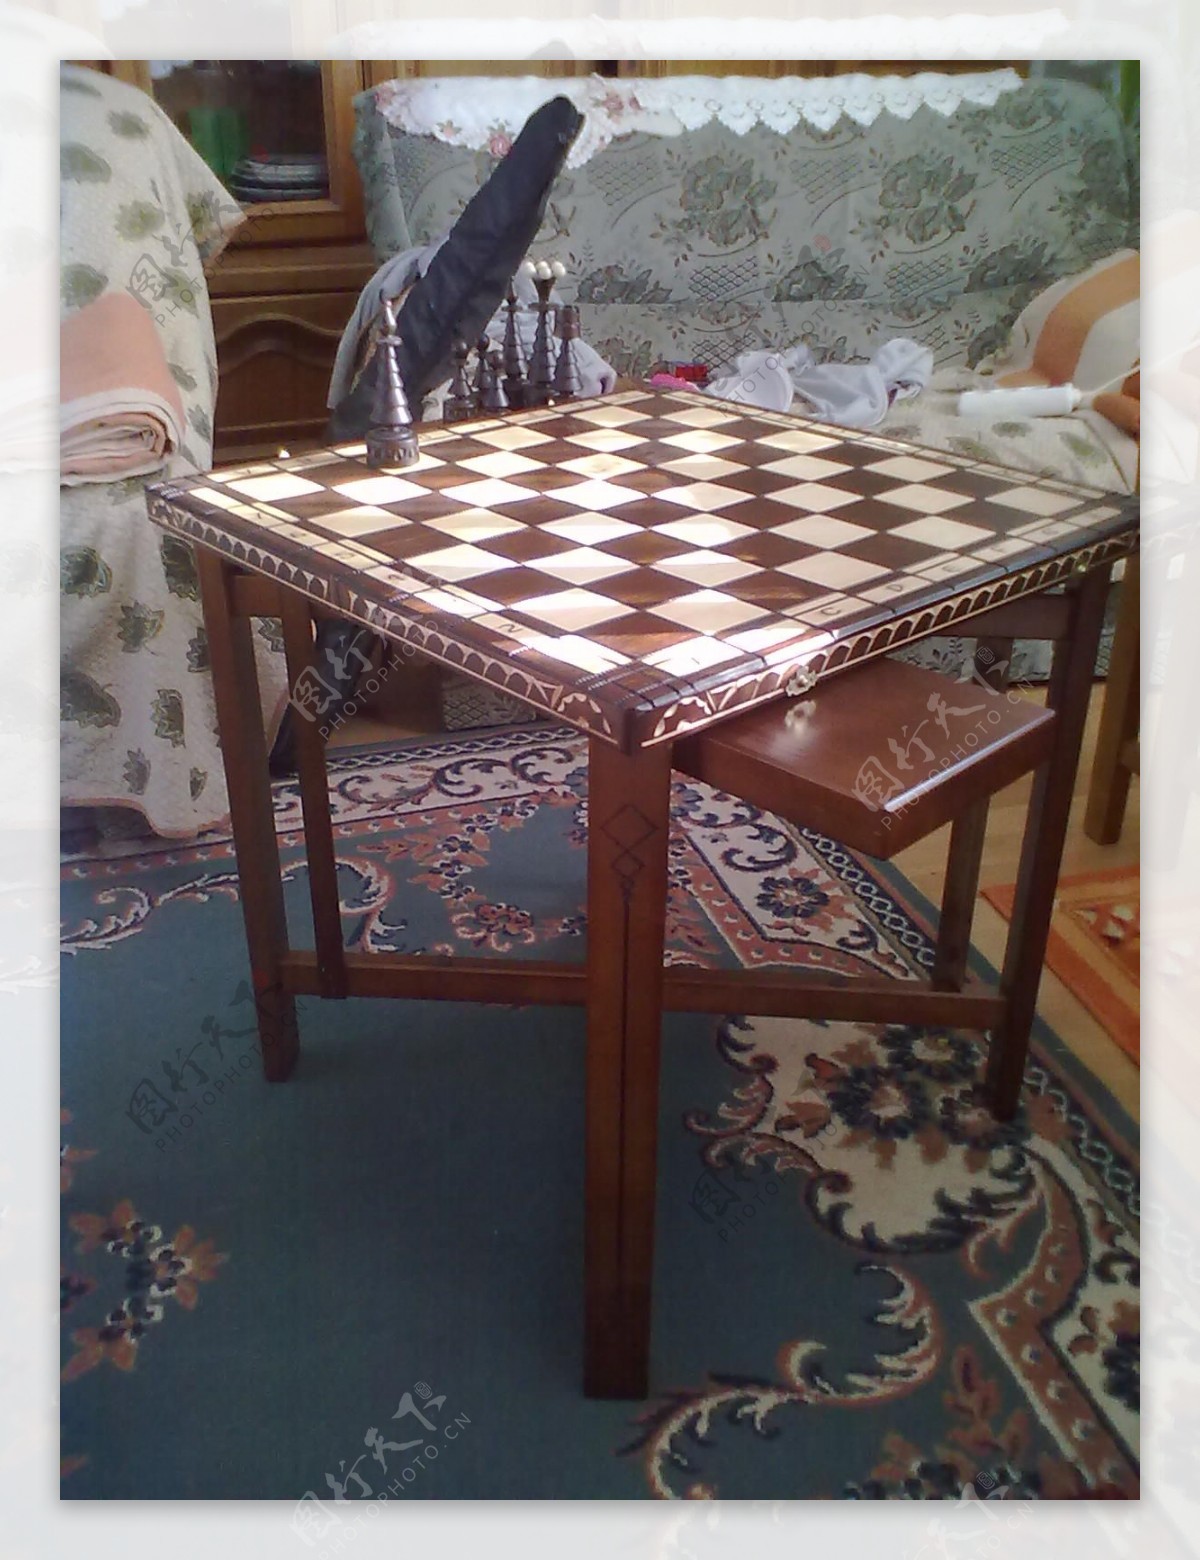 象棋桌